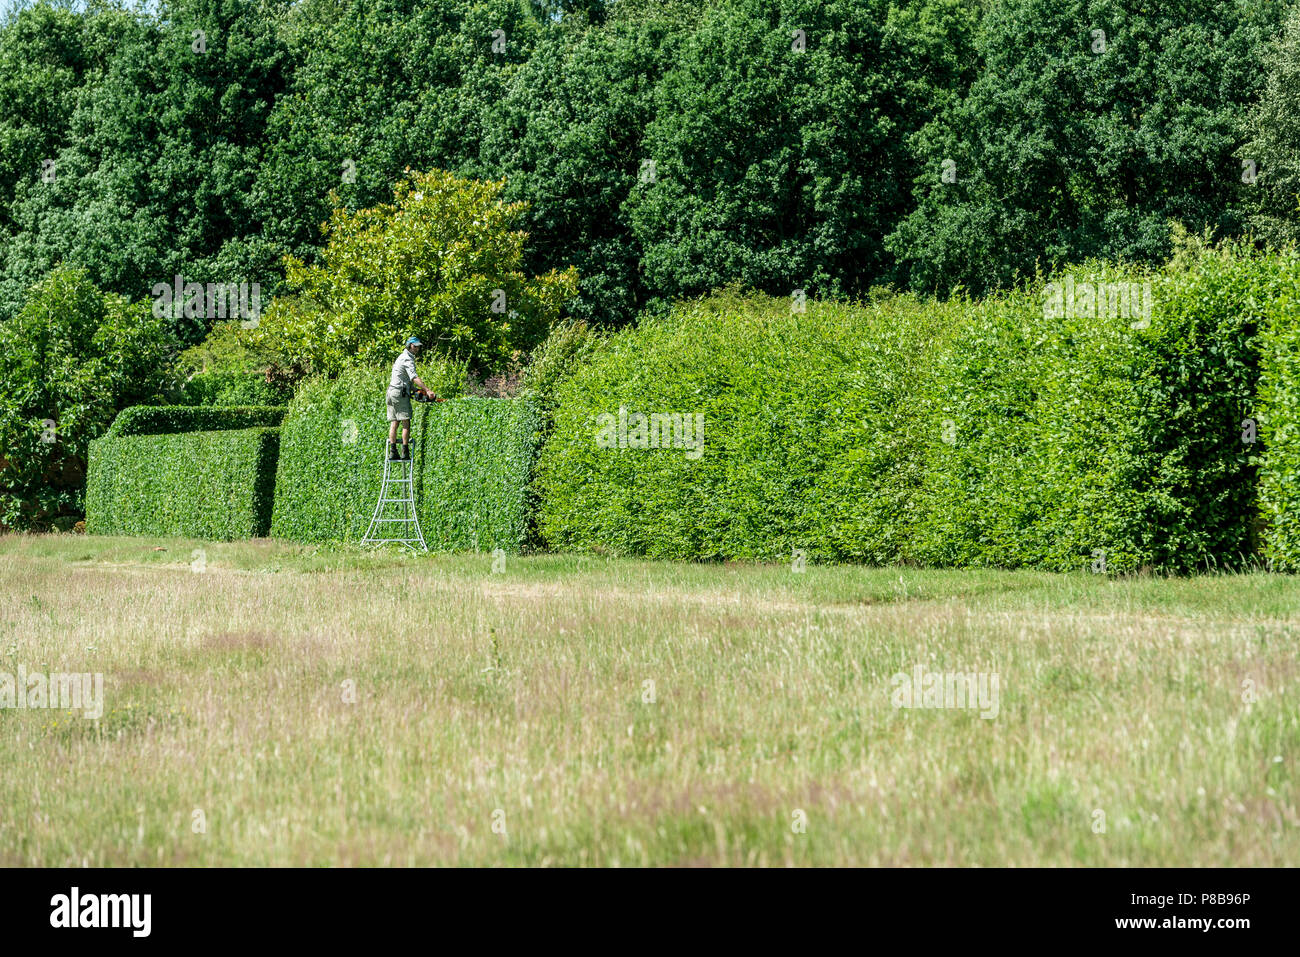 Mark Hall Garten und Arboretum, schneiden die lange Hecke, dass die Grenzen der ummauerten Garten. Powered hedg trimmen. Stockfoto